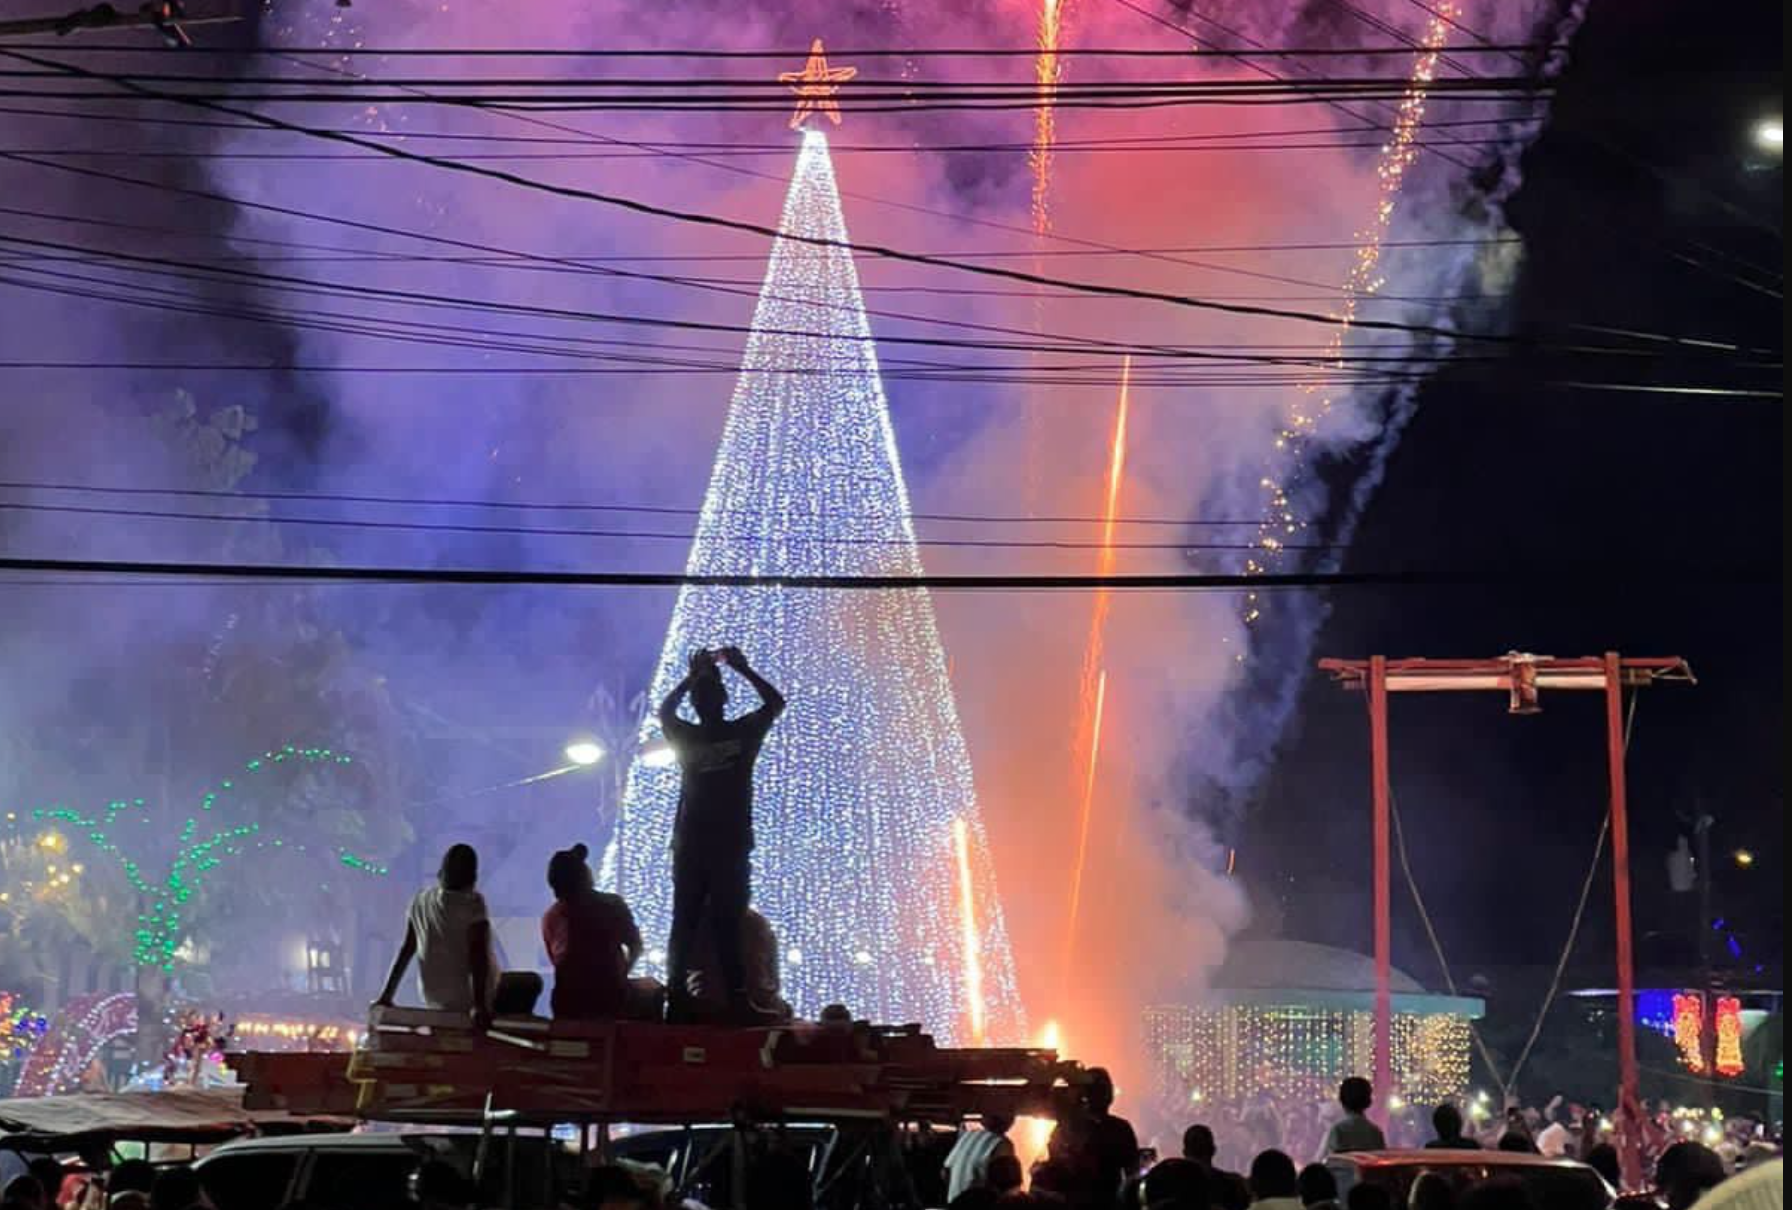 Villas navideñas, atractivos para las familias que iluminan los municipios de Honduras     